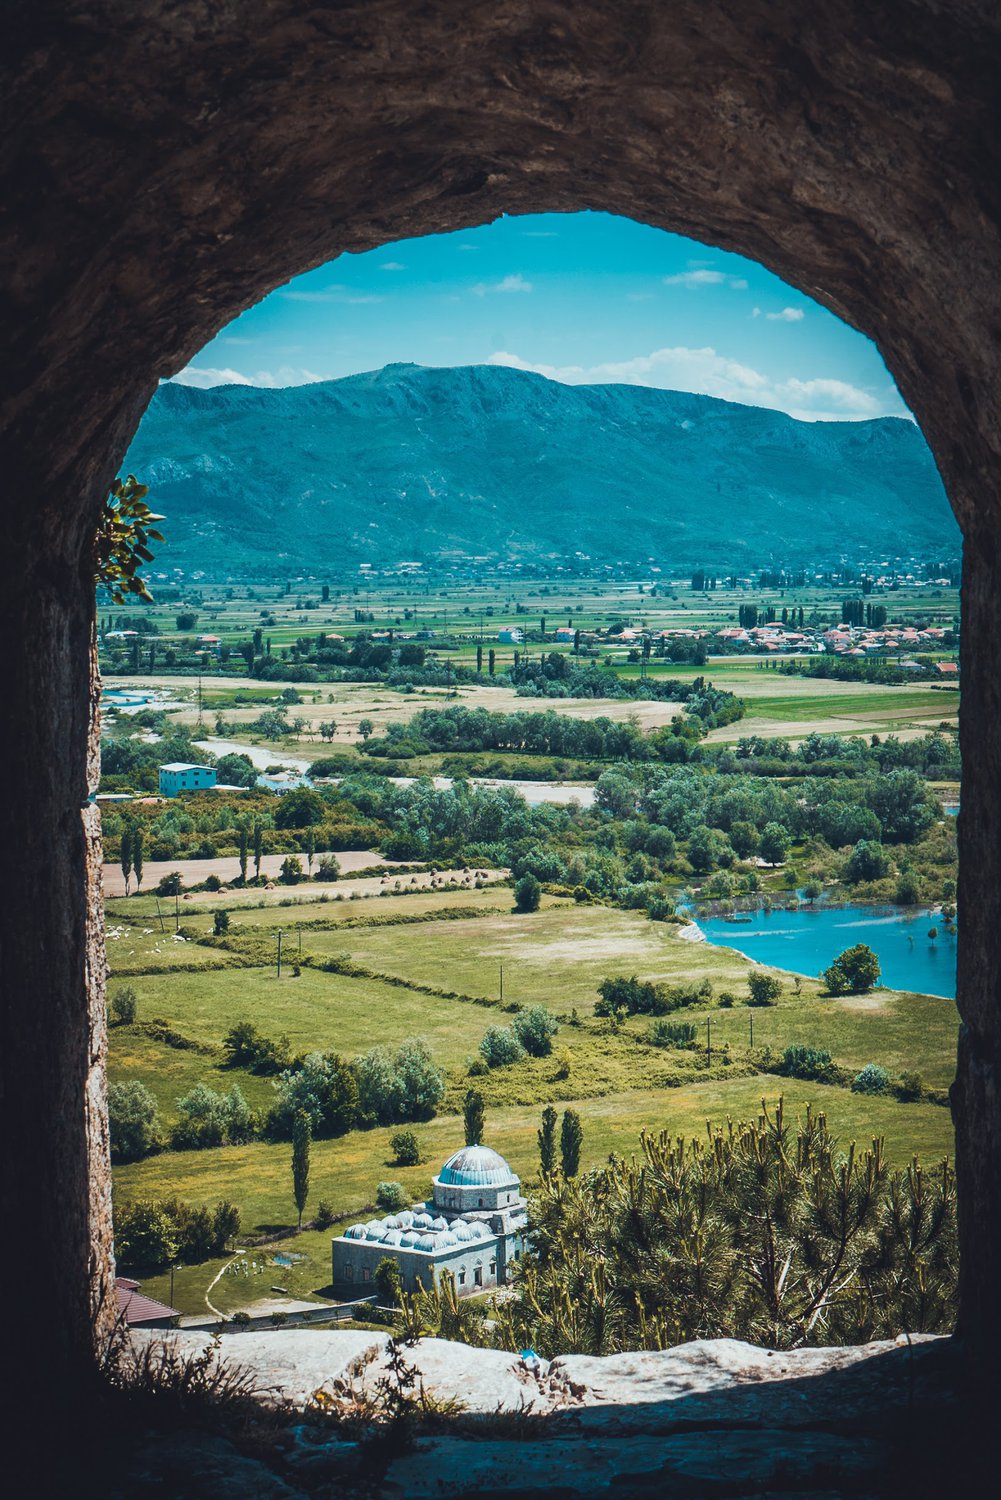 А из нашего окна албанская гора видна